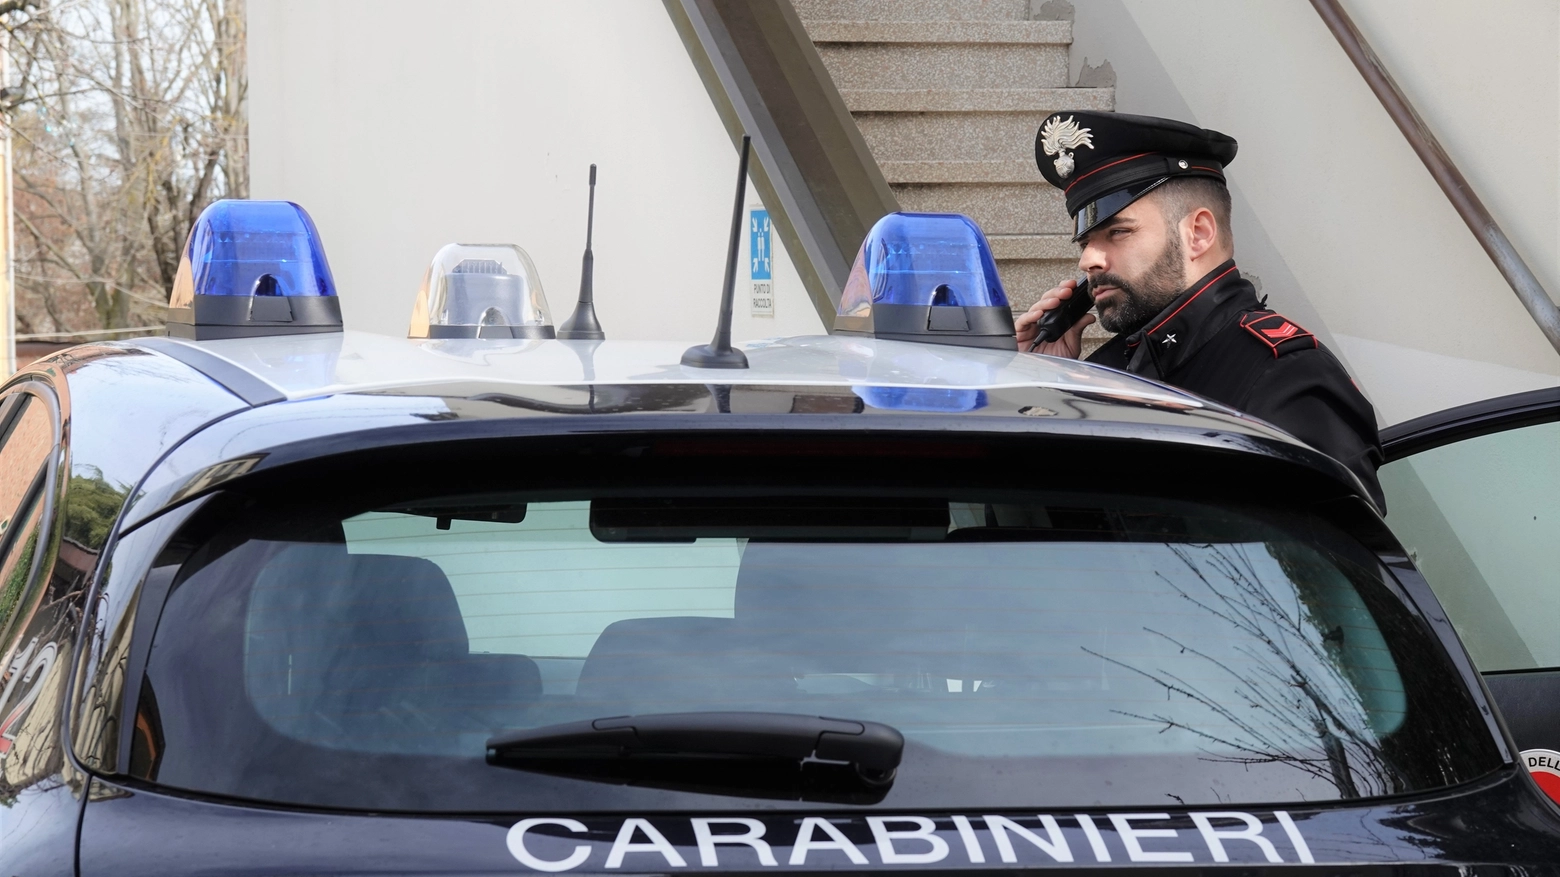 Gli aggressori, individuati dai carabinieri, devono rispondere dei reati di percosse, minaccia, danneggiamento e tentata rapina in concorso